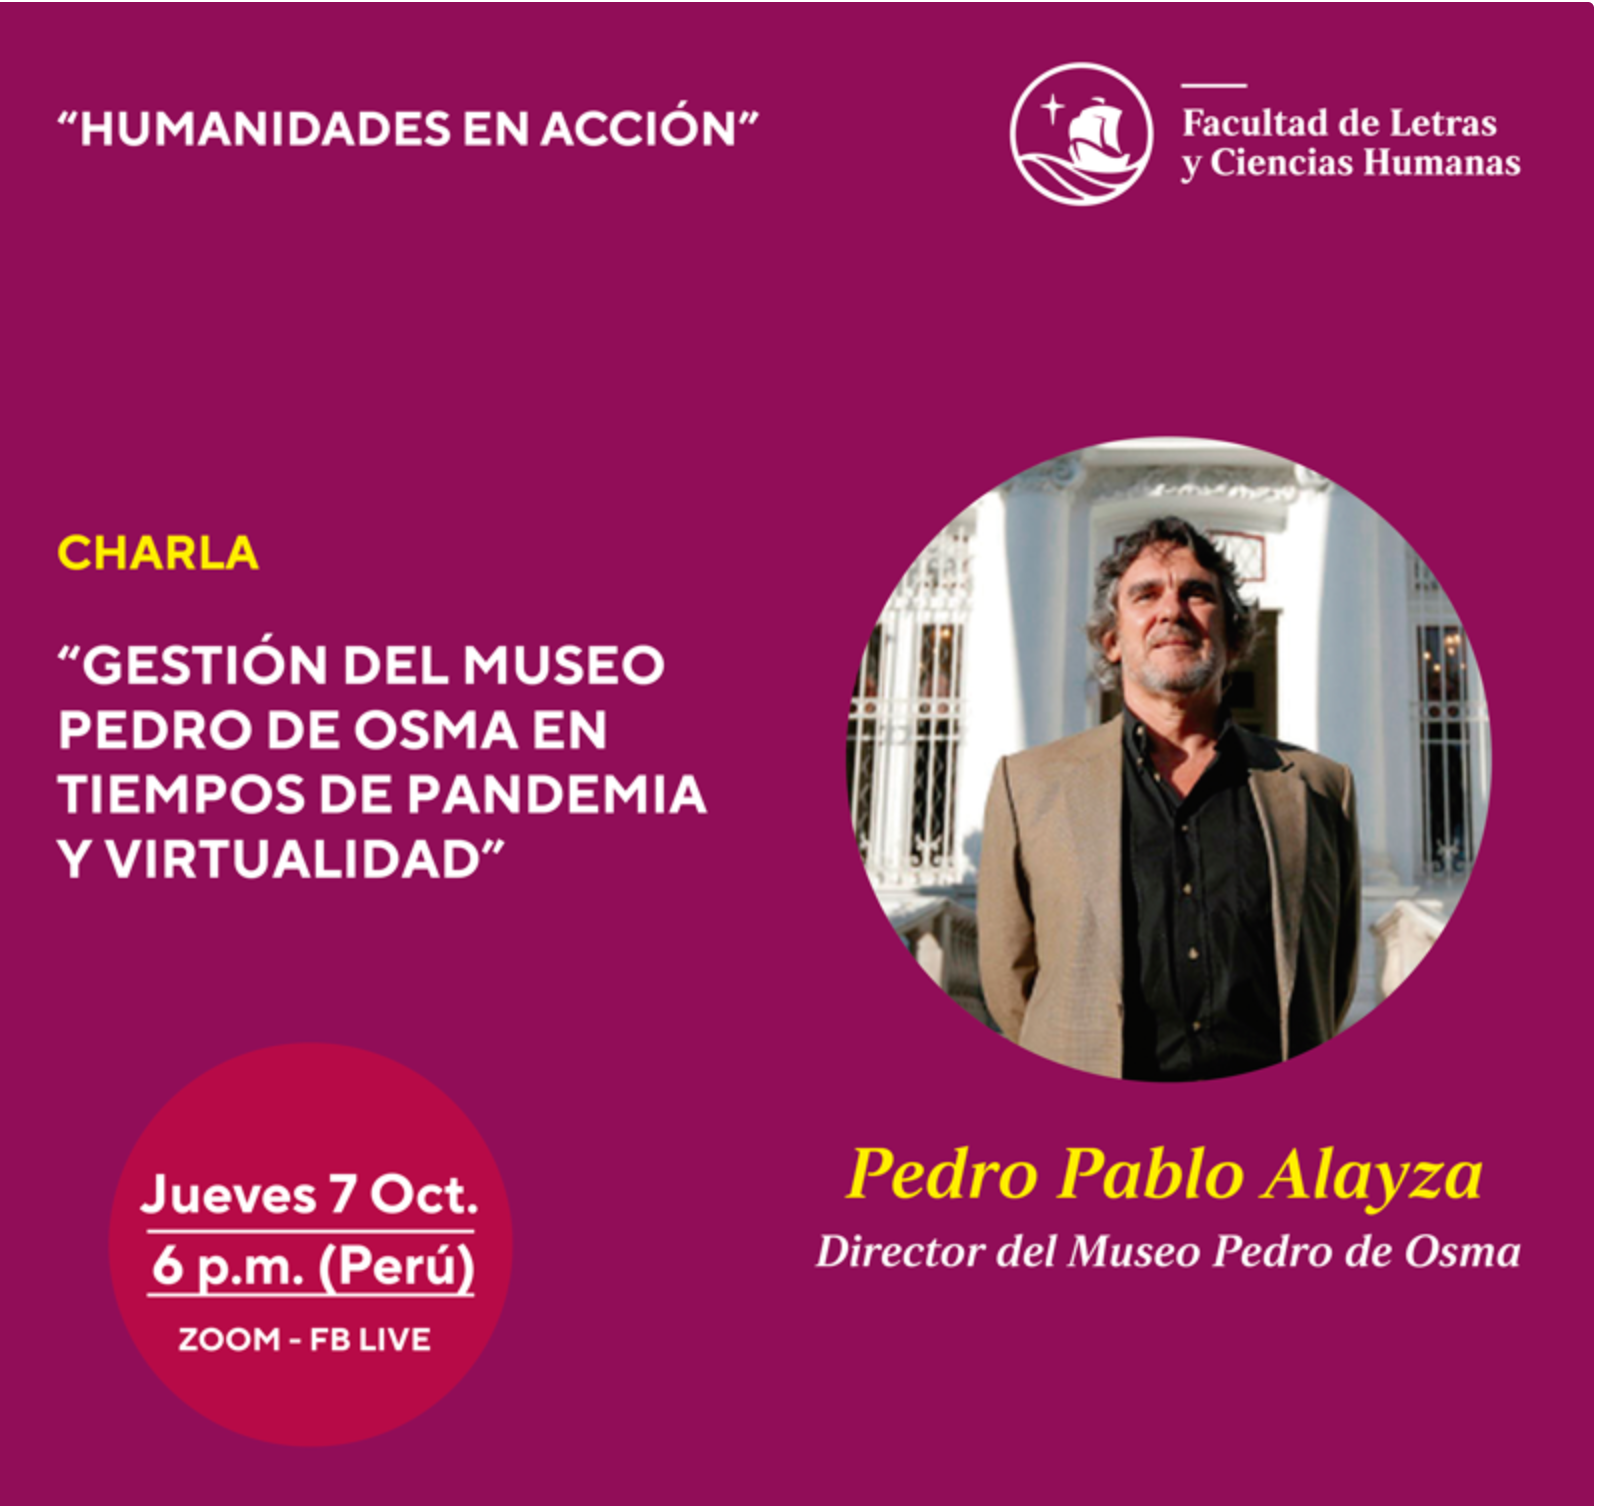 Humanidades en Acción: “Gestión del Museo Pedro de Osma en tiempos de pandemia y virtualidad” [video]